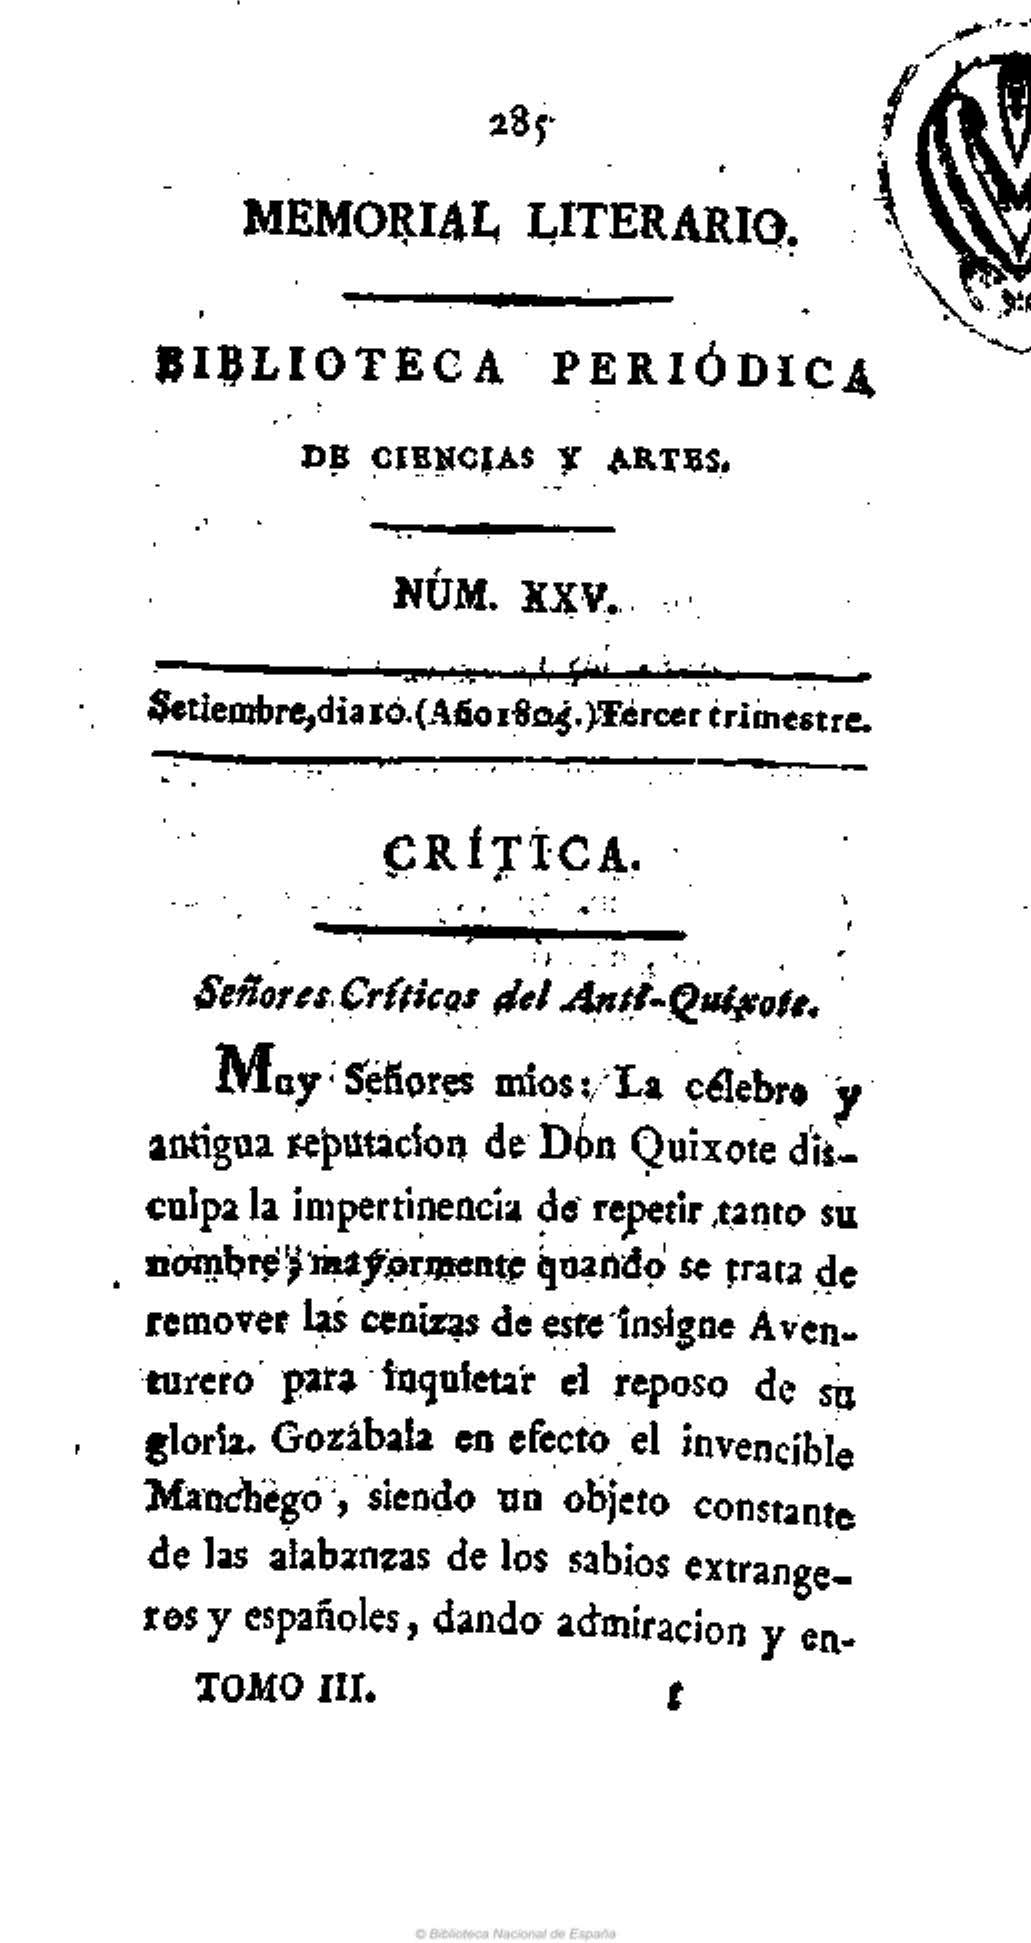 Señores críticos del Anti-Quijote [Carta decimotercera en respuesta al Anti-Quijote]